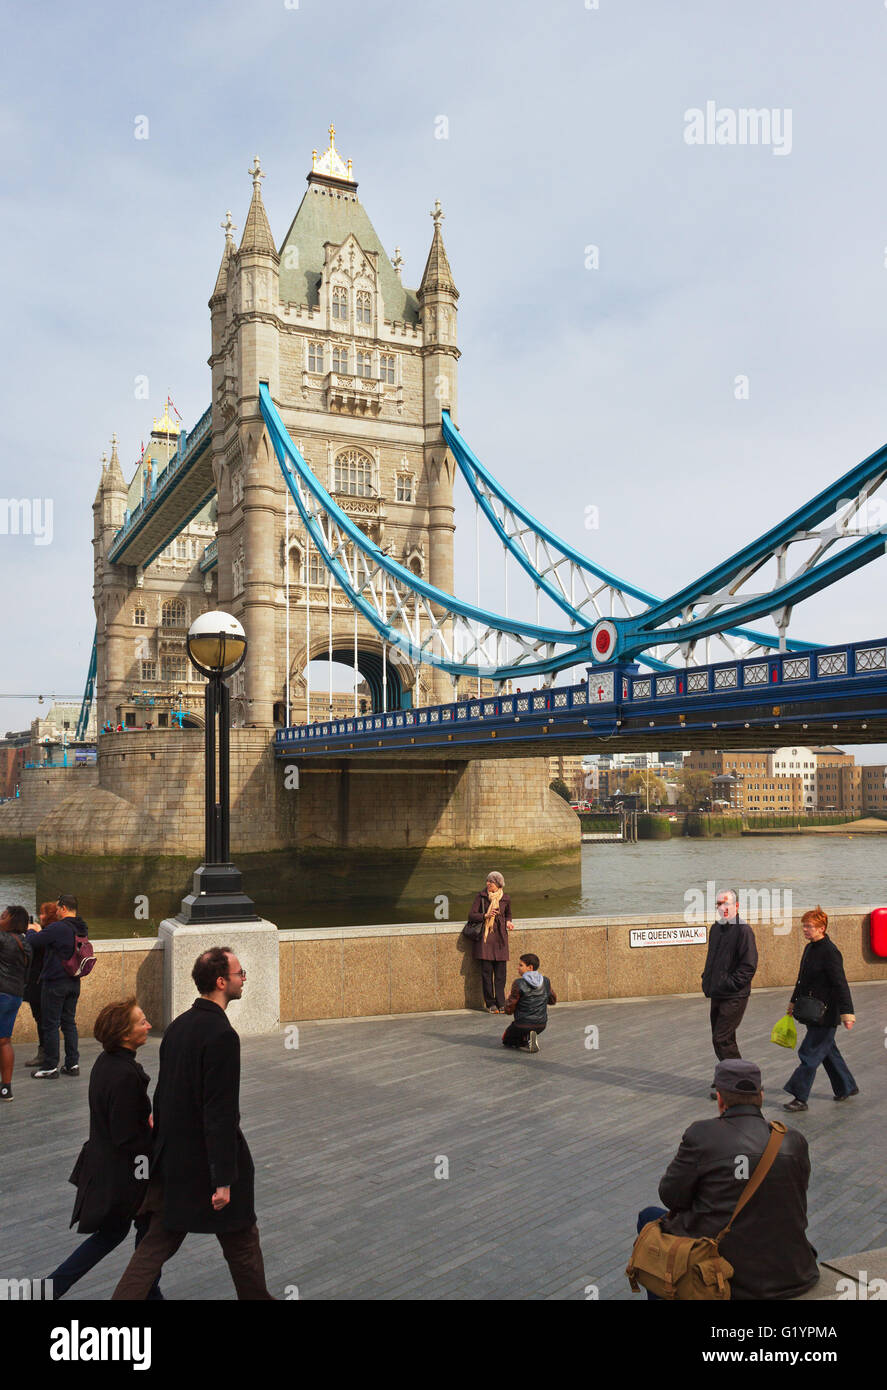 Londres, UK - 8 mars, 2014 : London's Tower Bridge est l'un des ponts les plus reconnaissables dans le monde. Les gens le long de la Tamise Banque D'Images